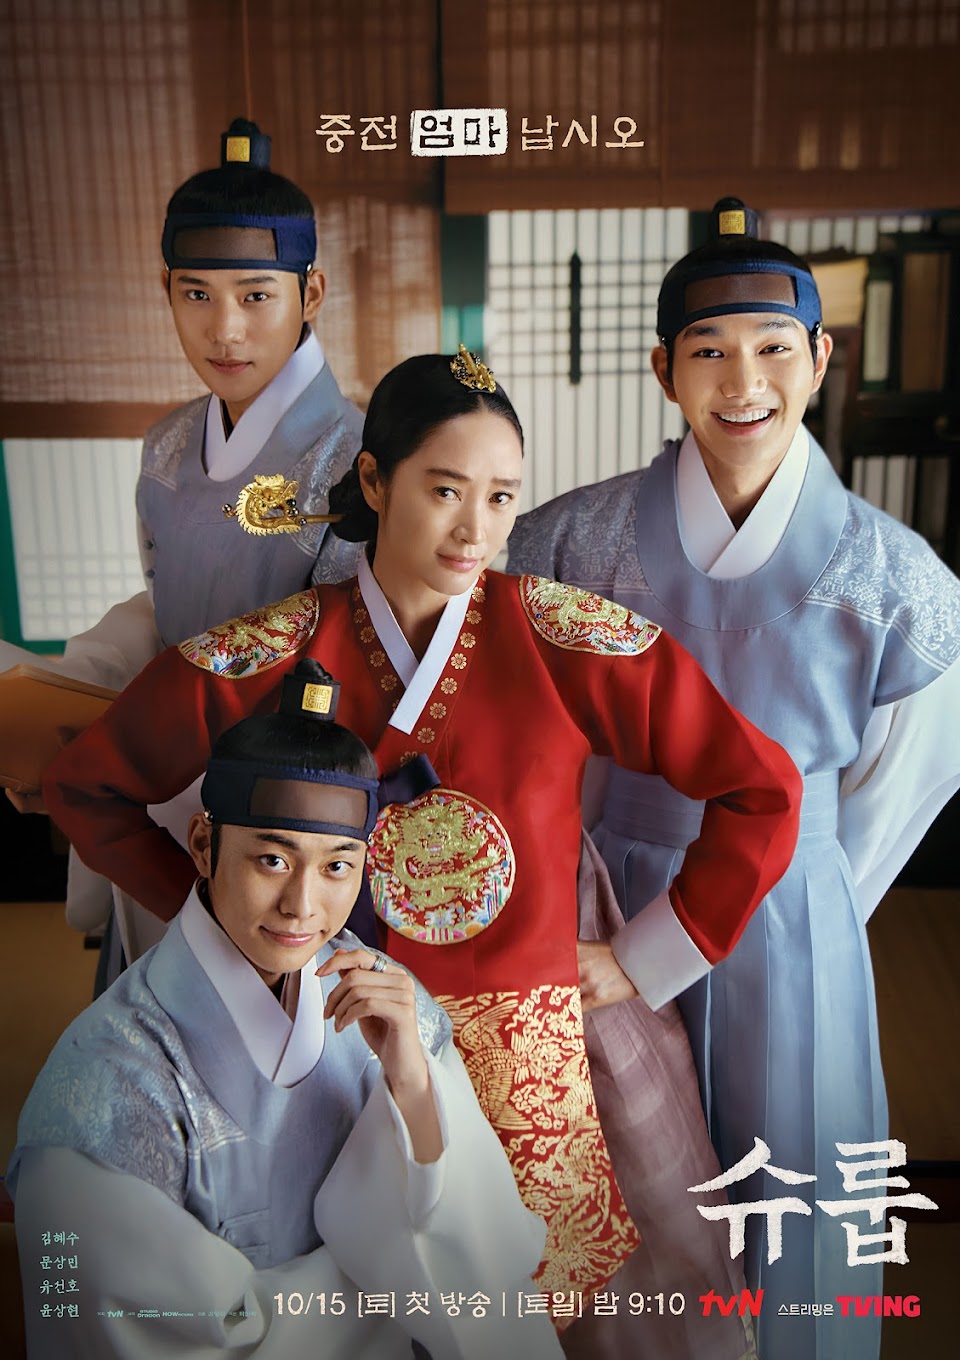 Phim mới của Moon Sang Min: Dưới bóng trung điện - Under the Queen's Umbrella (2022)